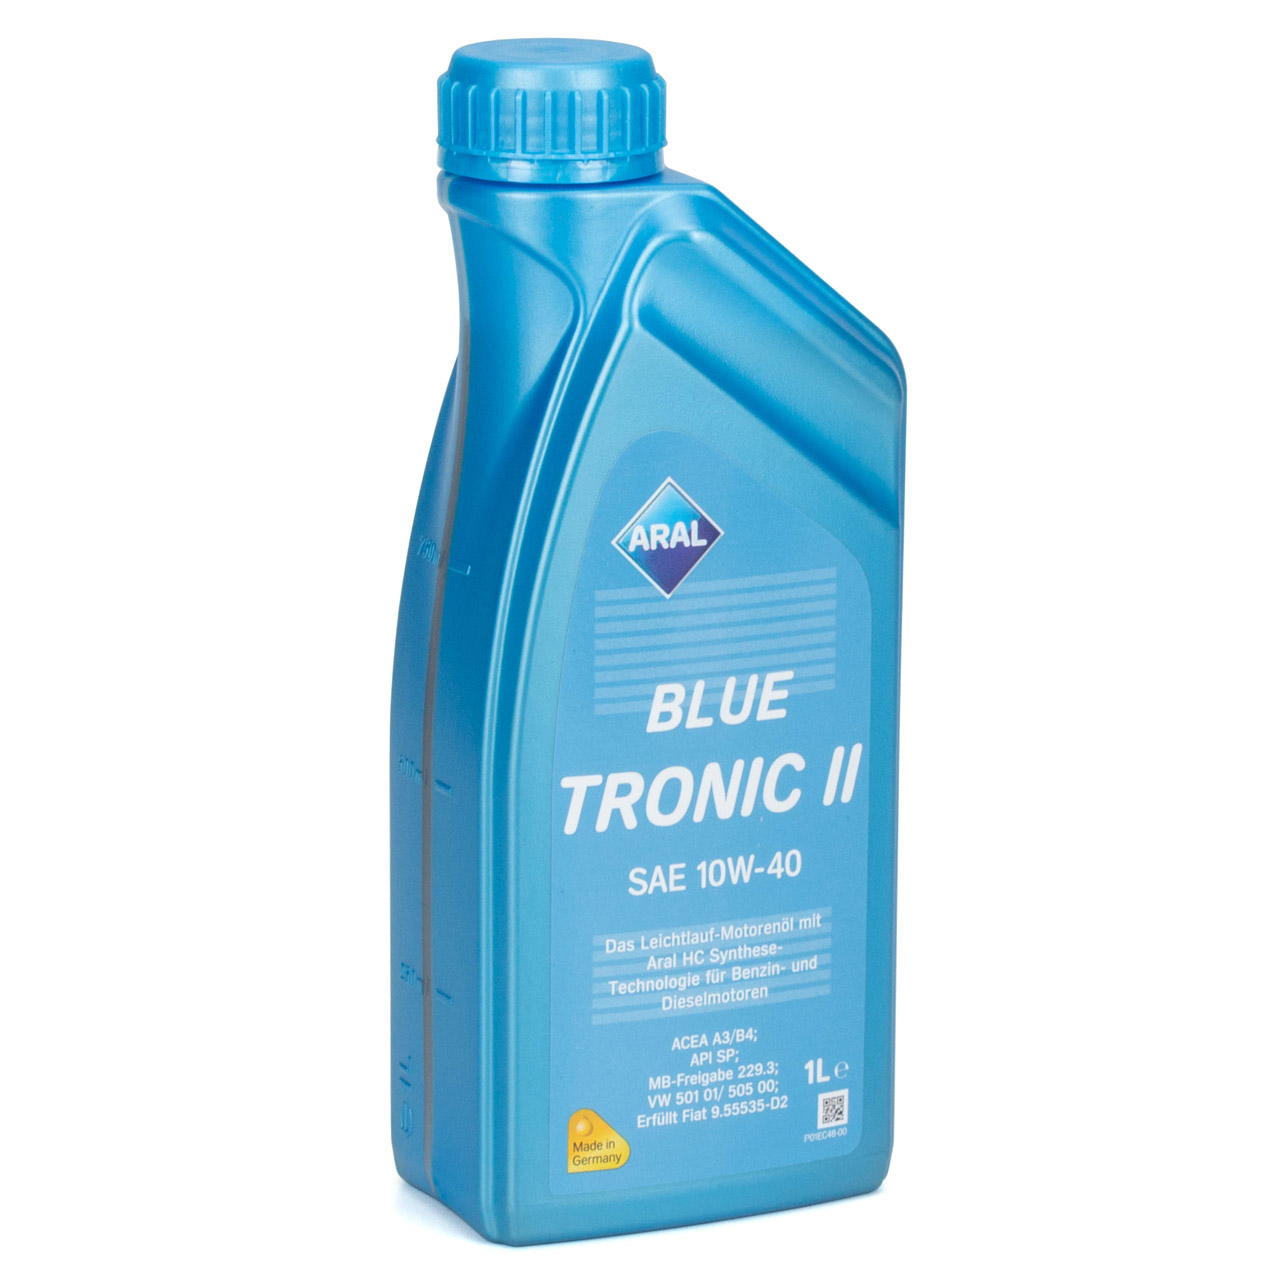 1L 1 Liter ARAL BLUE TRONIC II 10W-40 Motoröl Öl MB 229.3 VW 501.01/505.00 FIAT 9.55535-D2